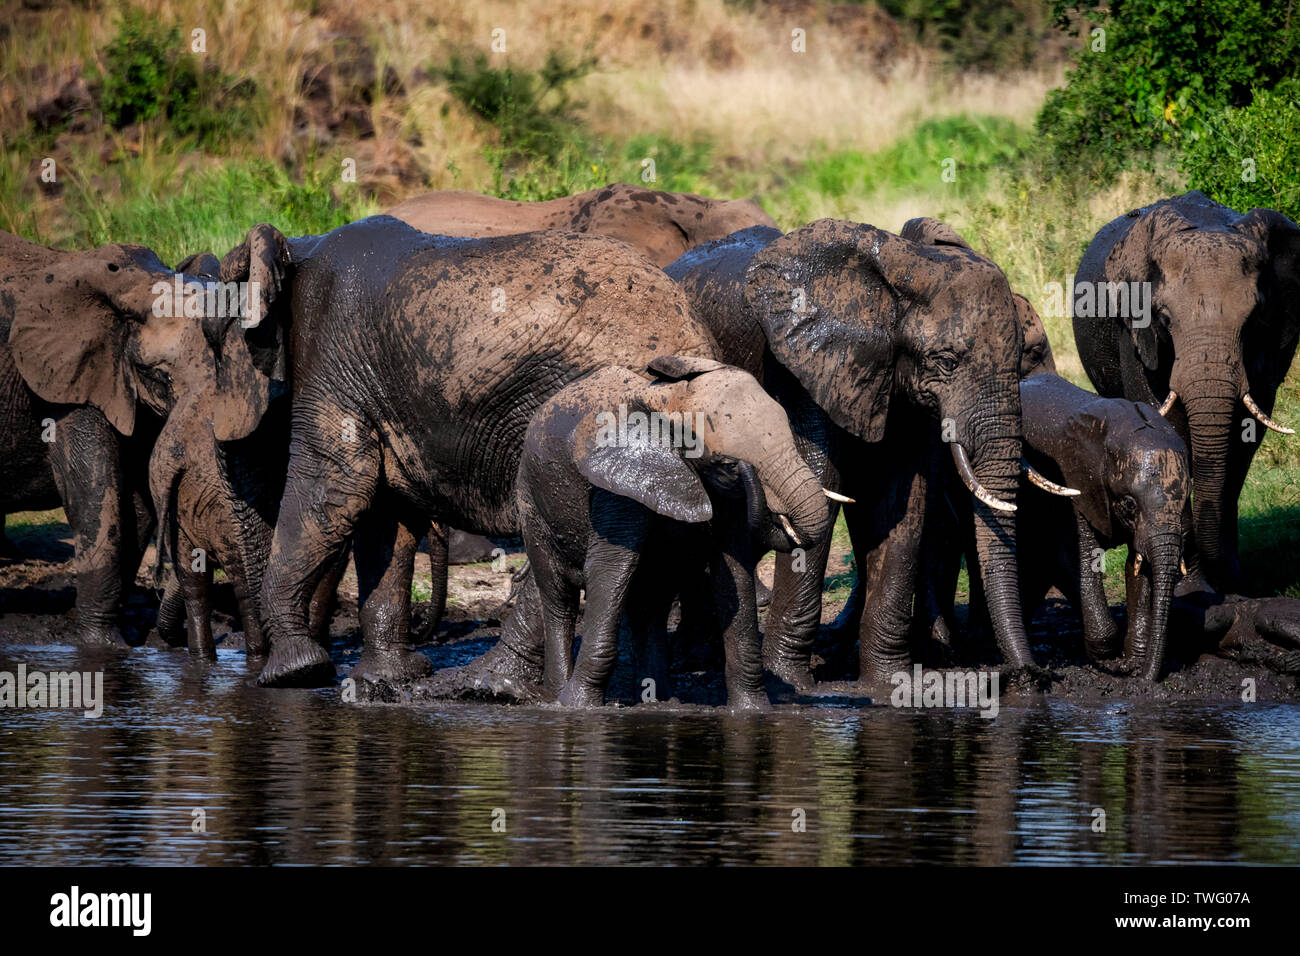 Un troupeau d'éléphants boire d'une rivière et de jouer dans la boue Banque D'Images